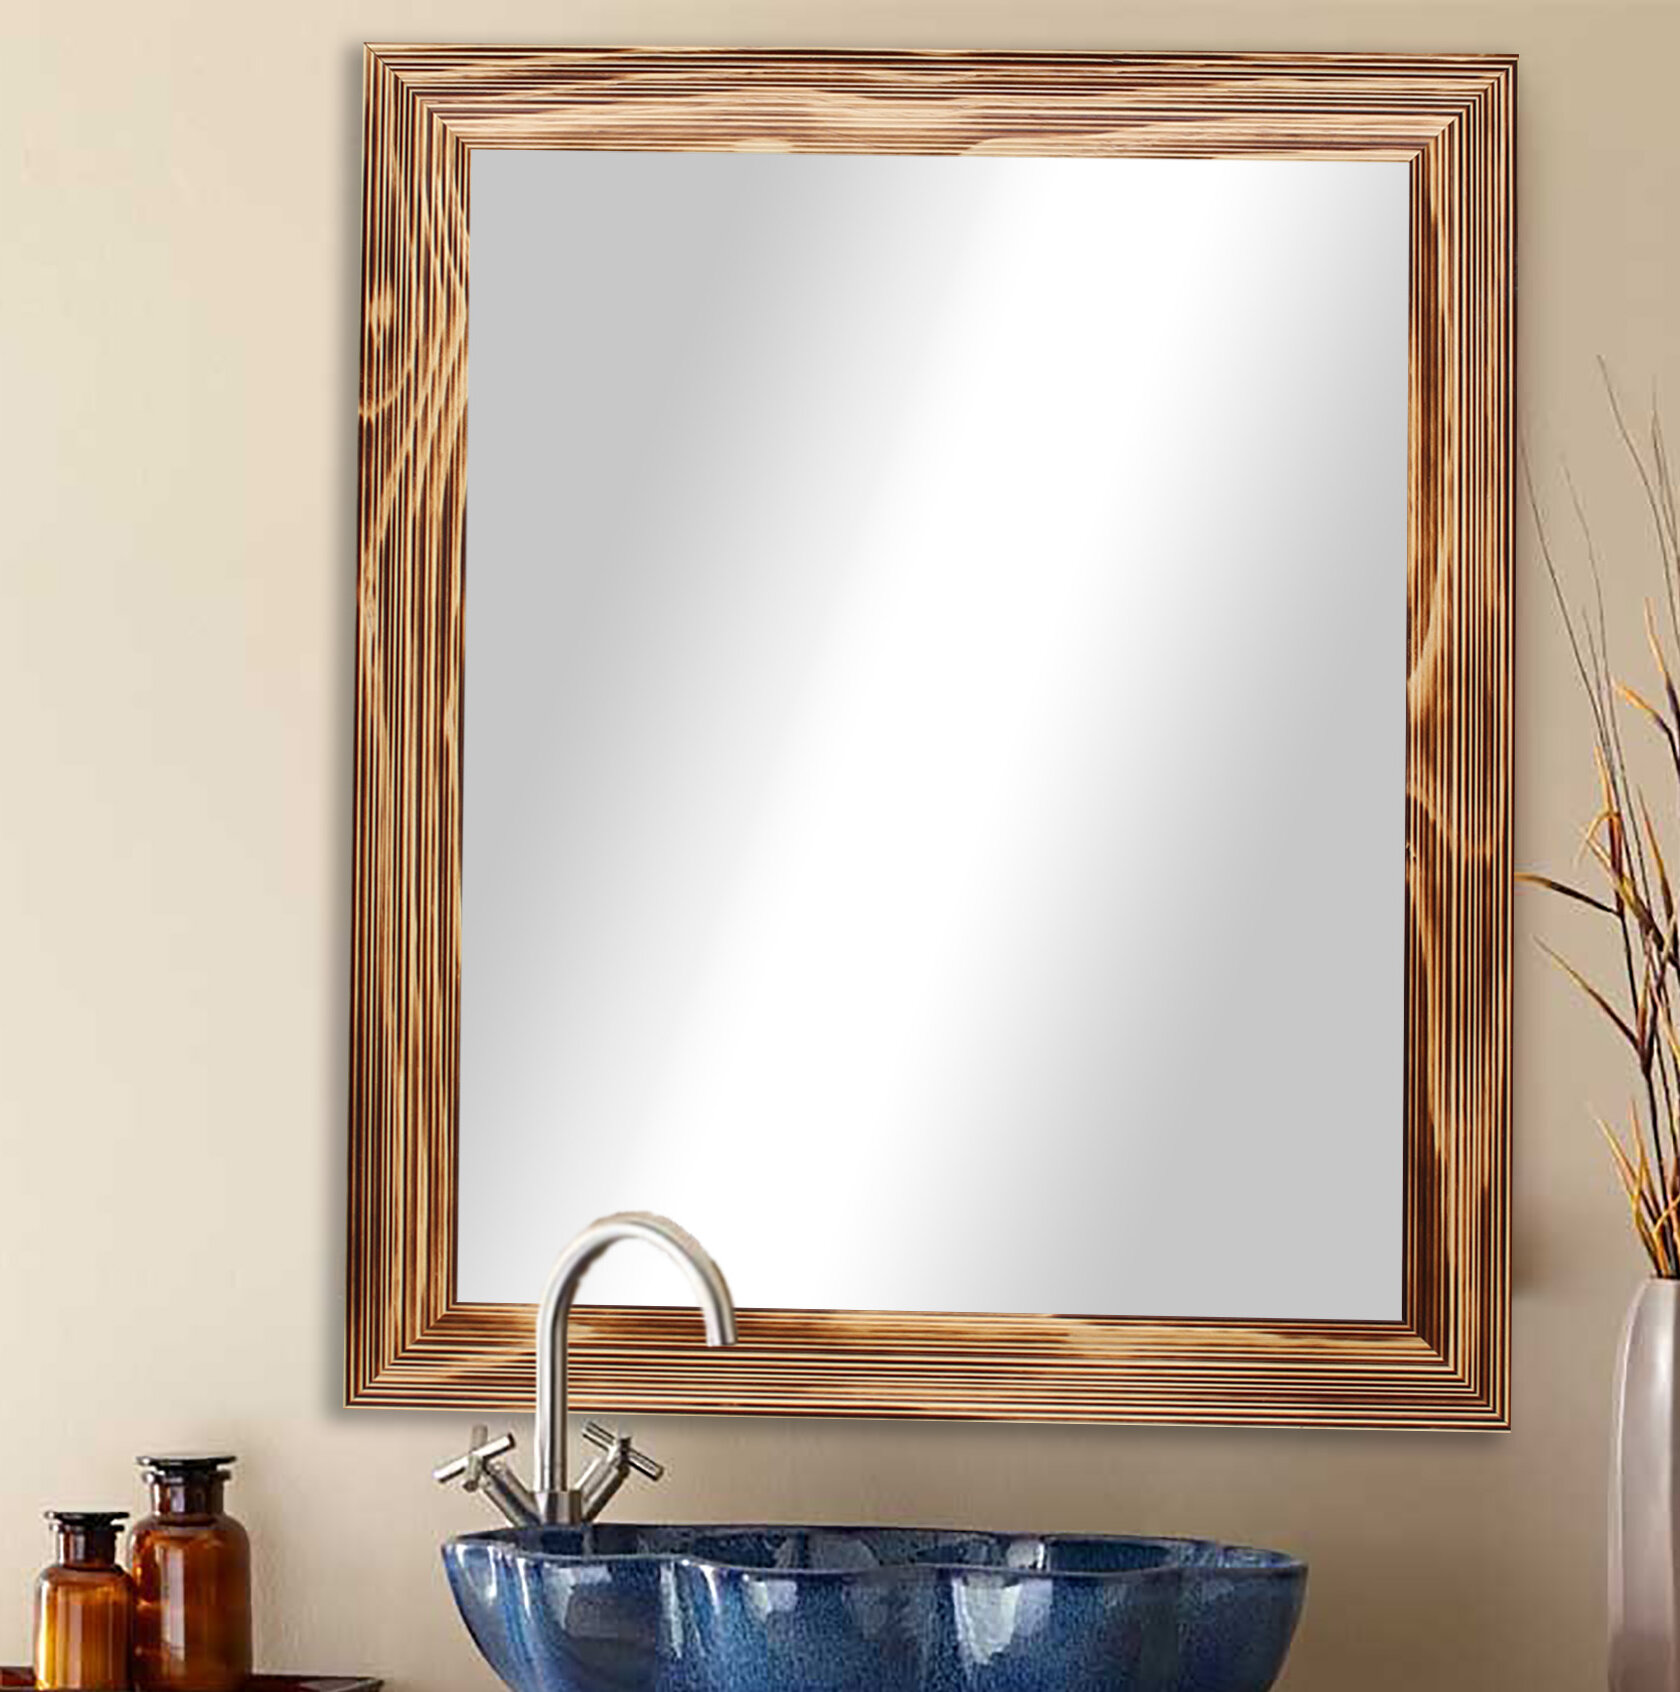 Millwood Pines Truex Rustic Distressed Bathroom Vanity Mirror Reviews Wayfair